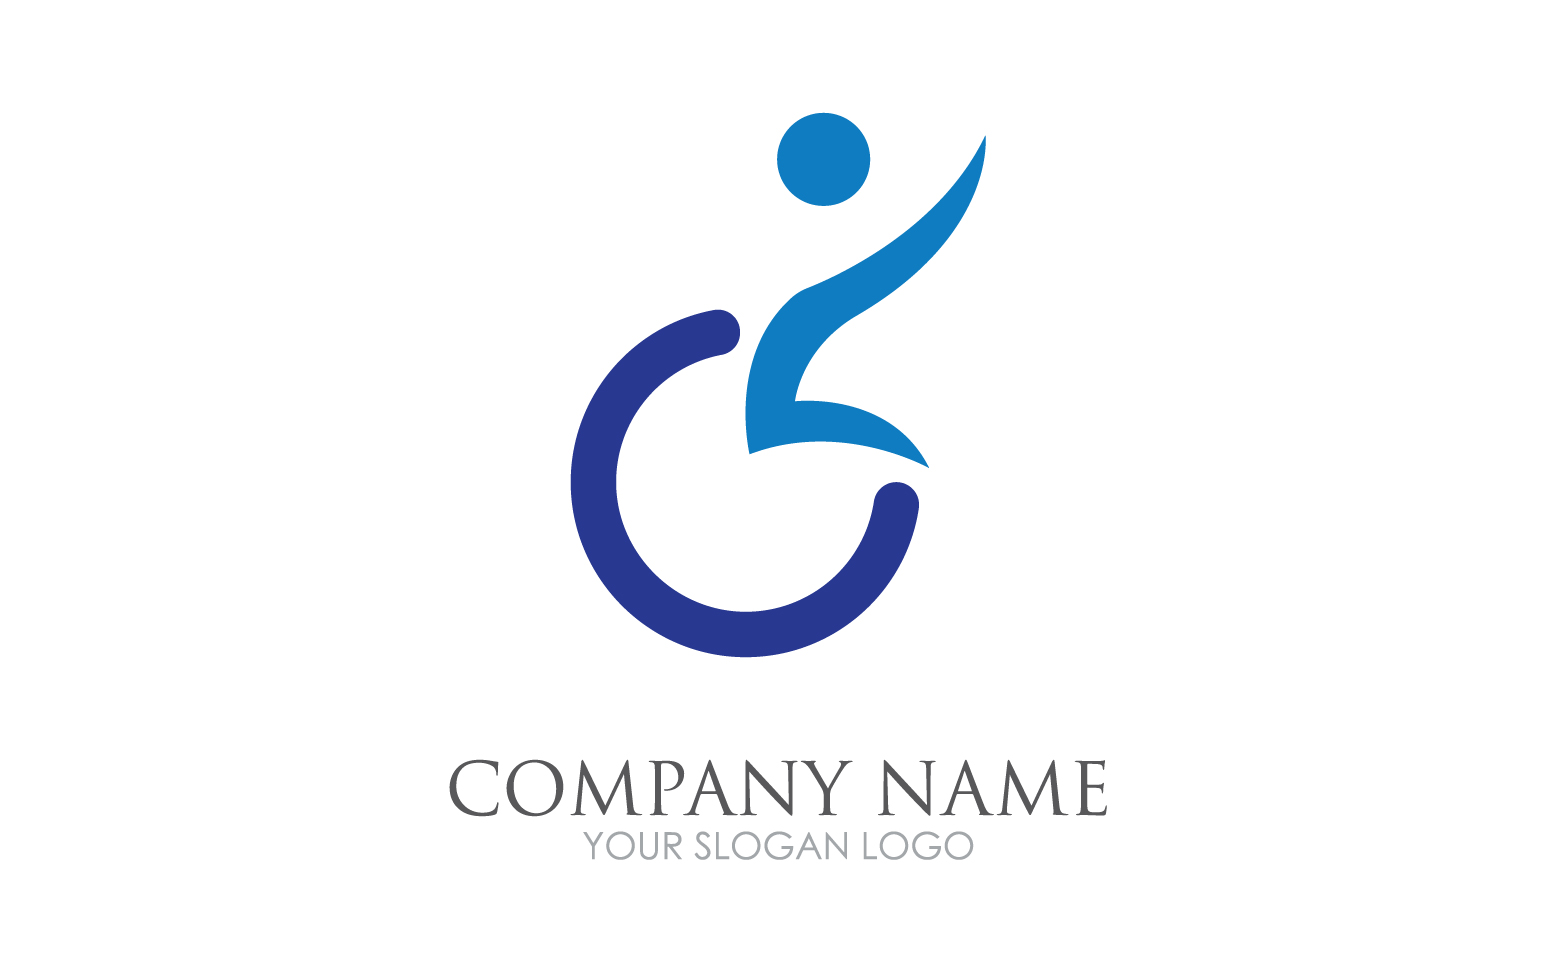 Difabel logo icon template version v41